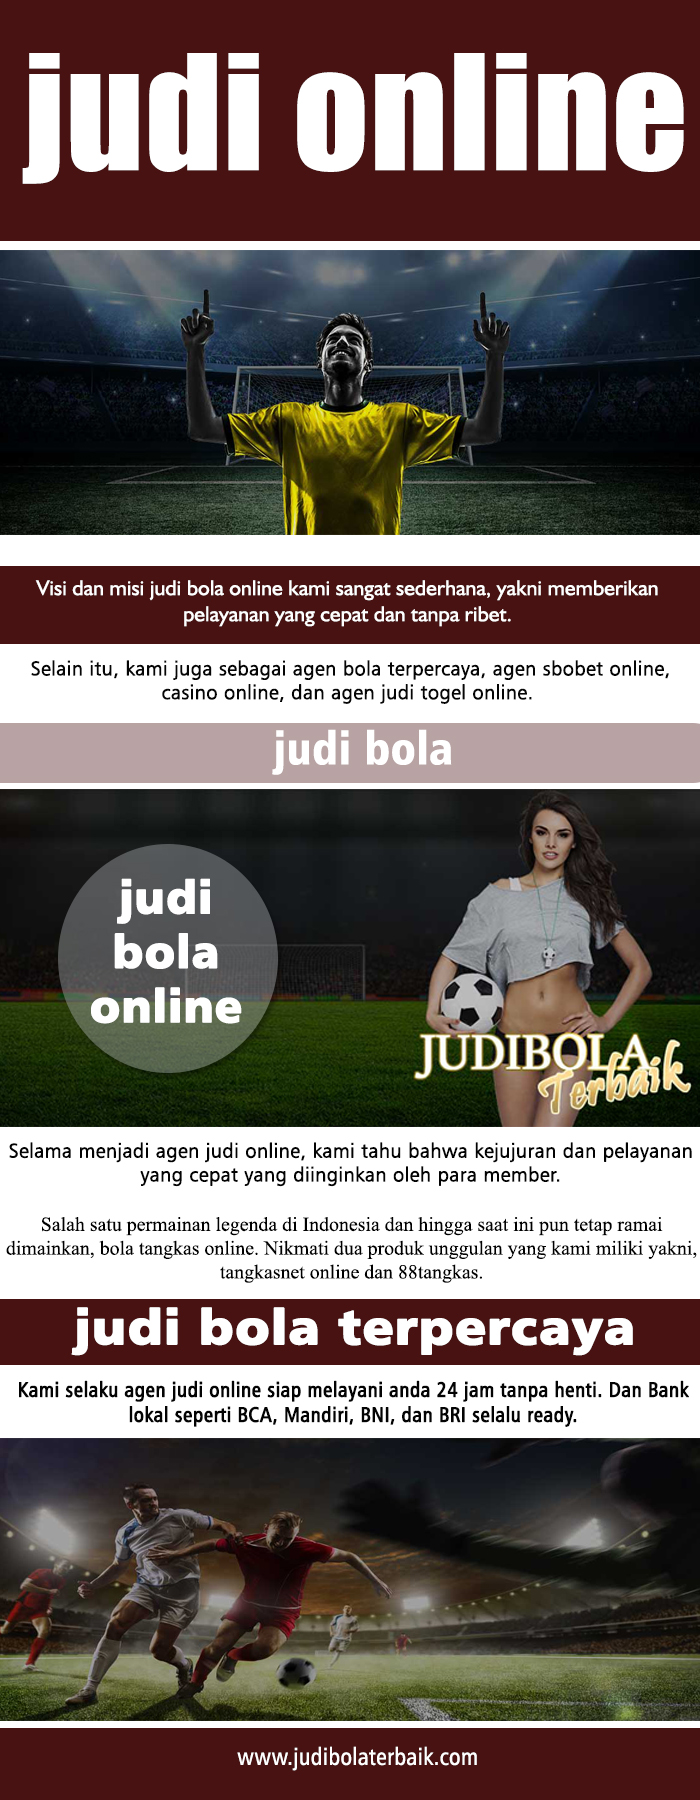 Website Judi Online Terpercaya